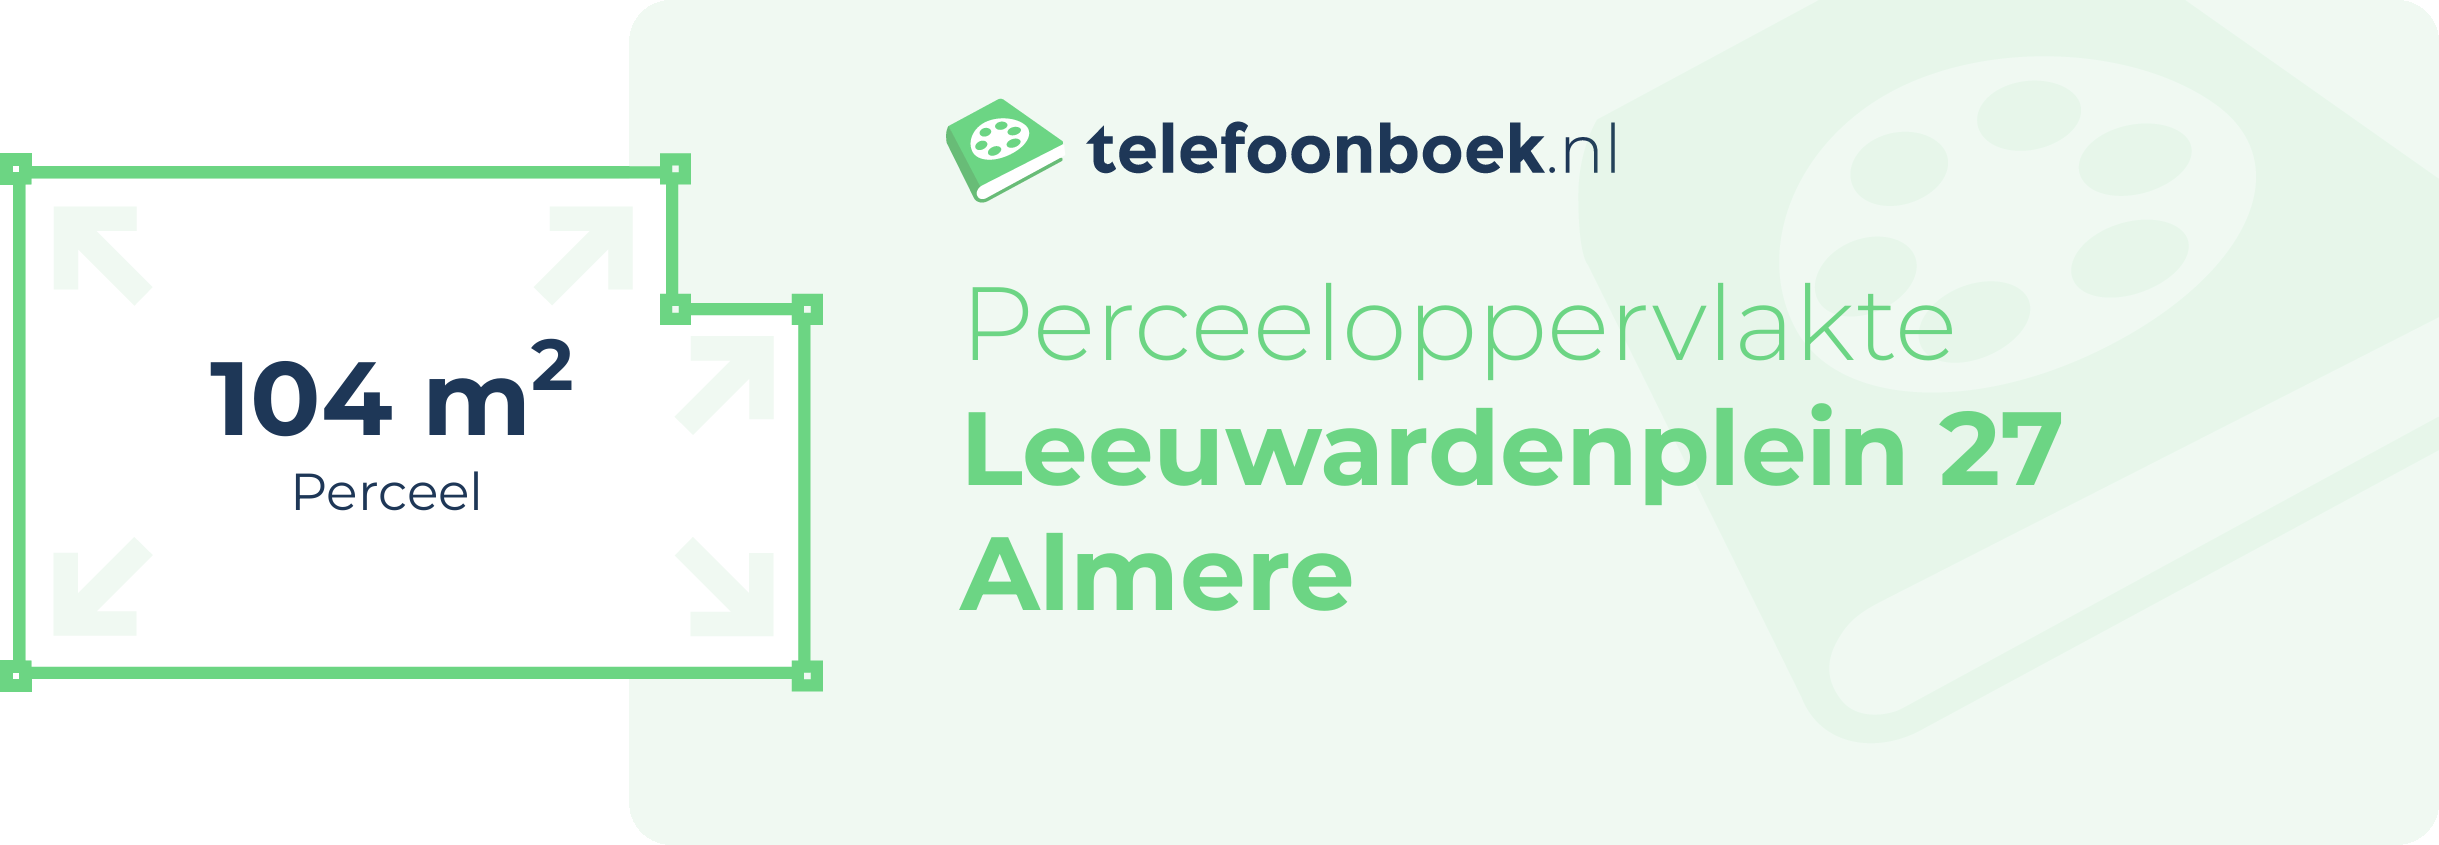 Perceeloppervlakte Leeuwardenplein 27 Almere